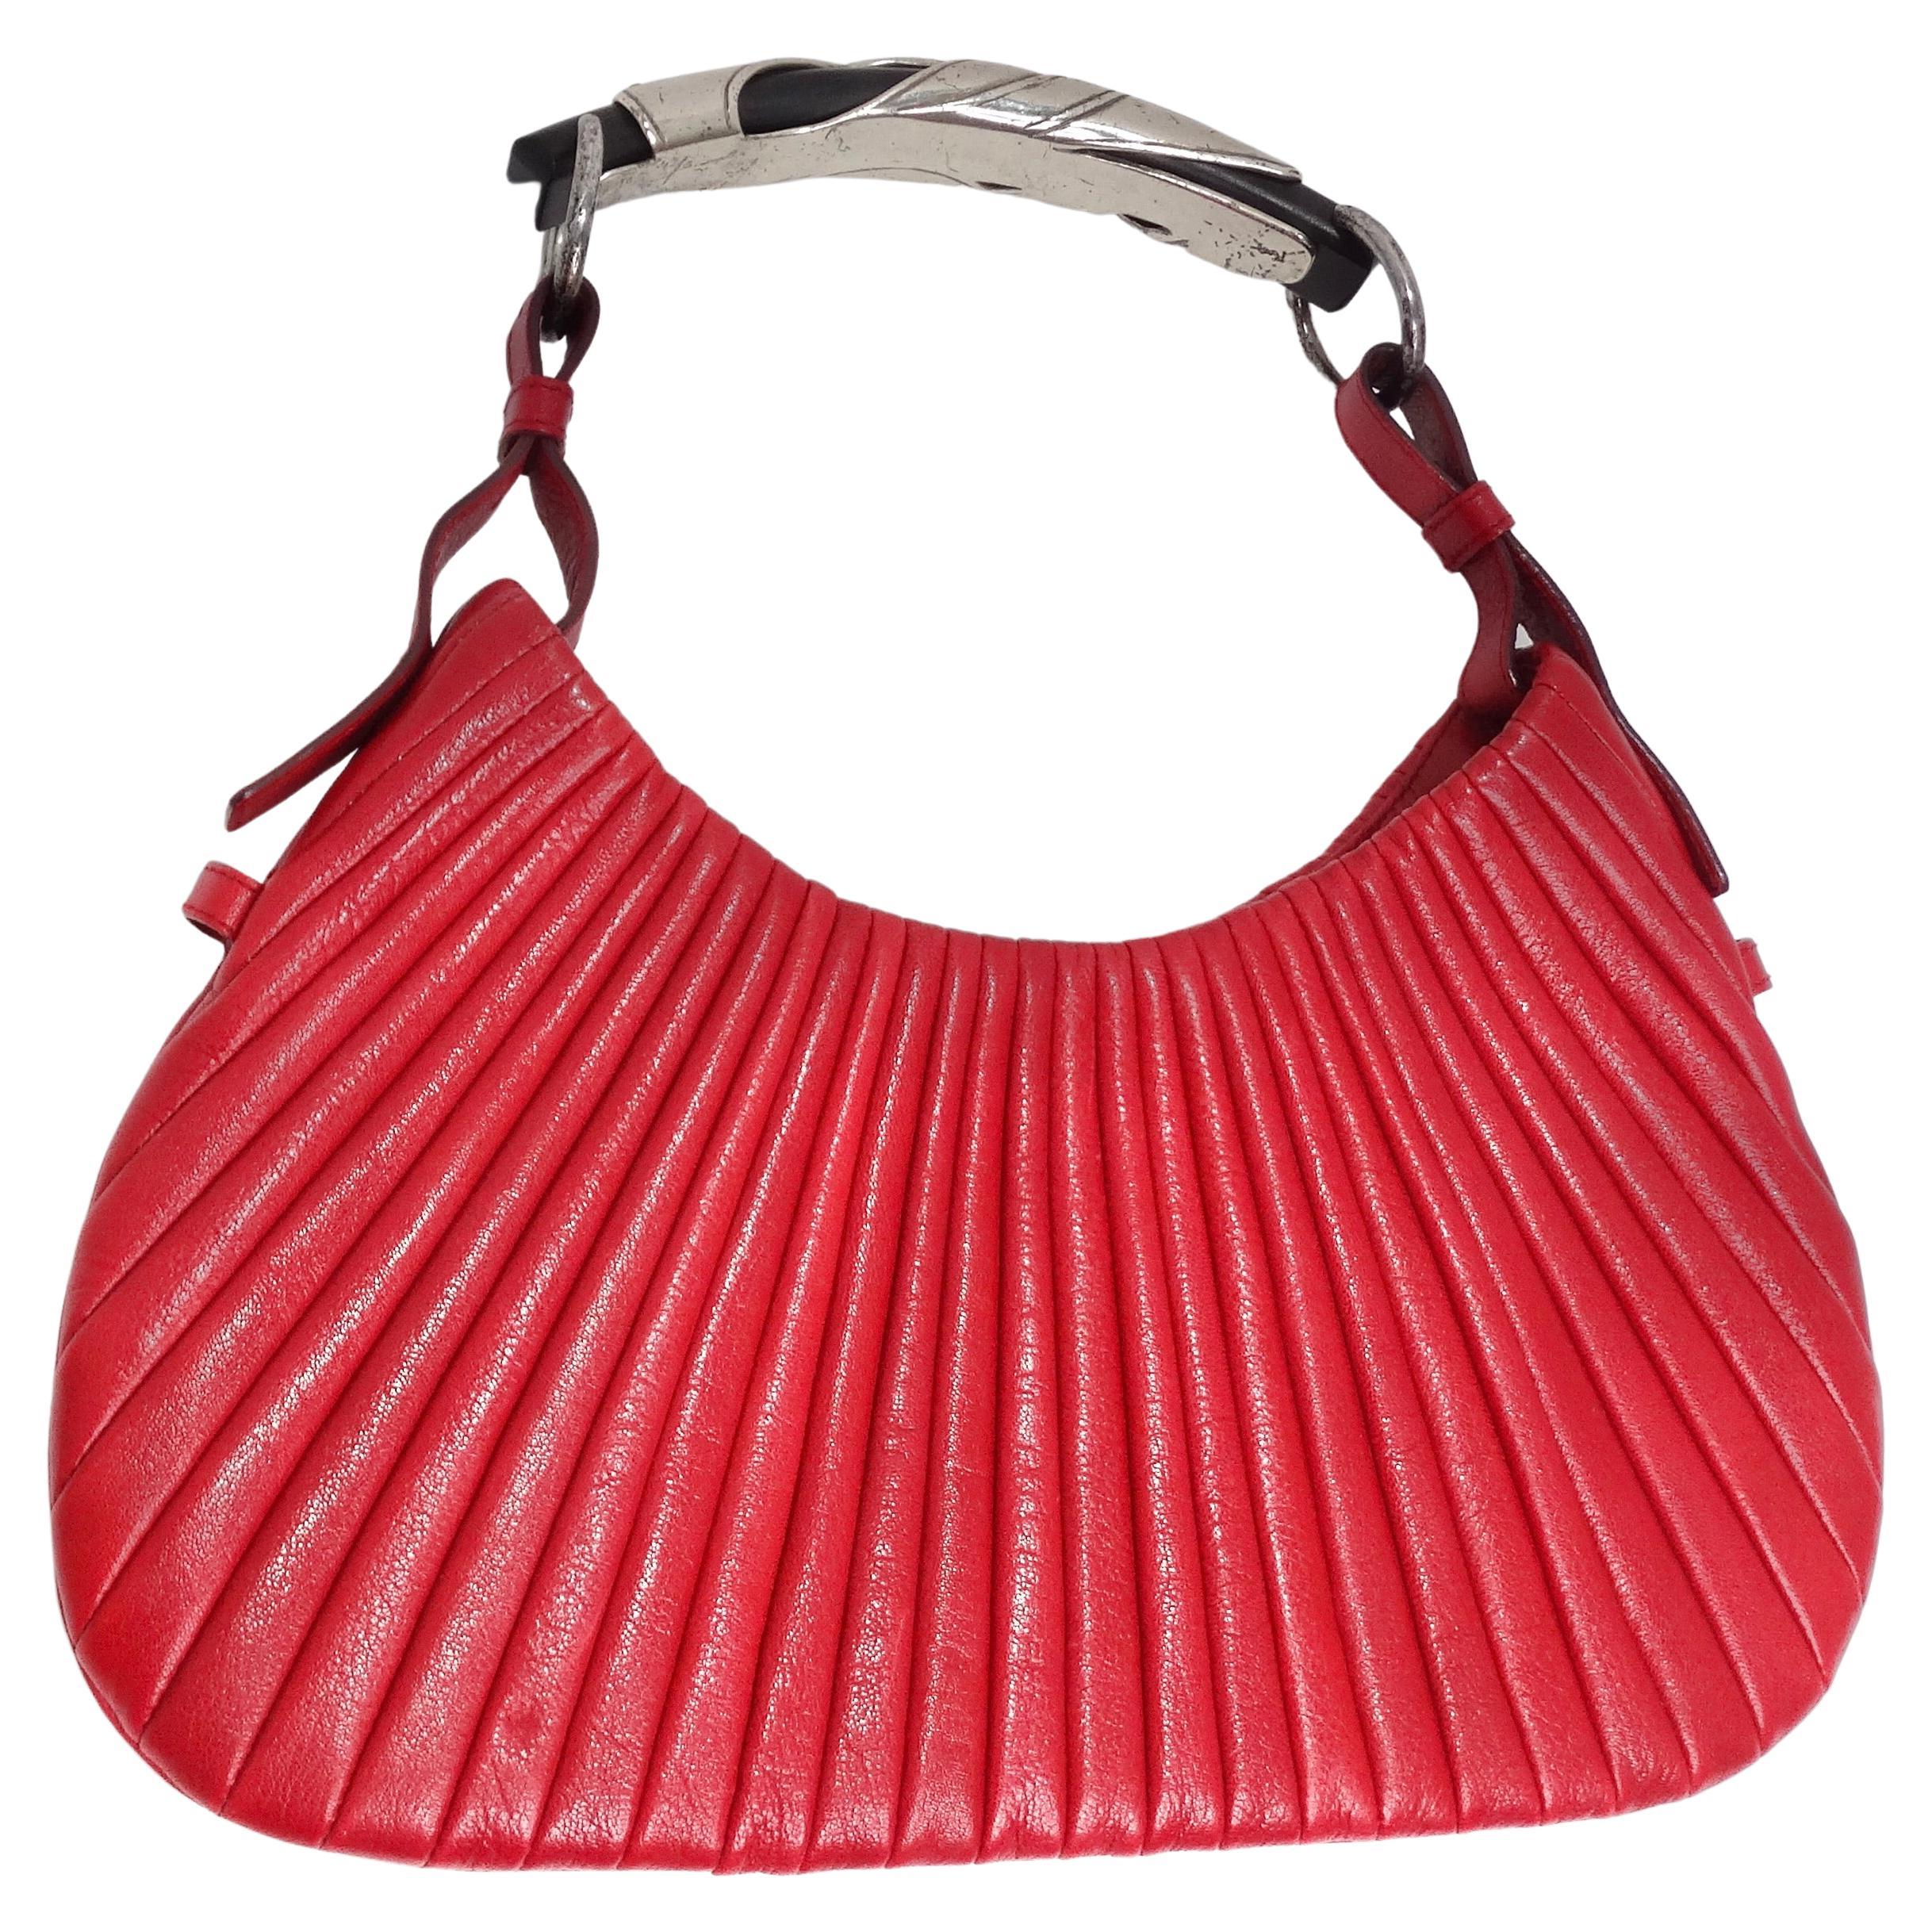 Tom Ford For Yves Saint Laurent Mombasa Red Leather Handbag